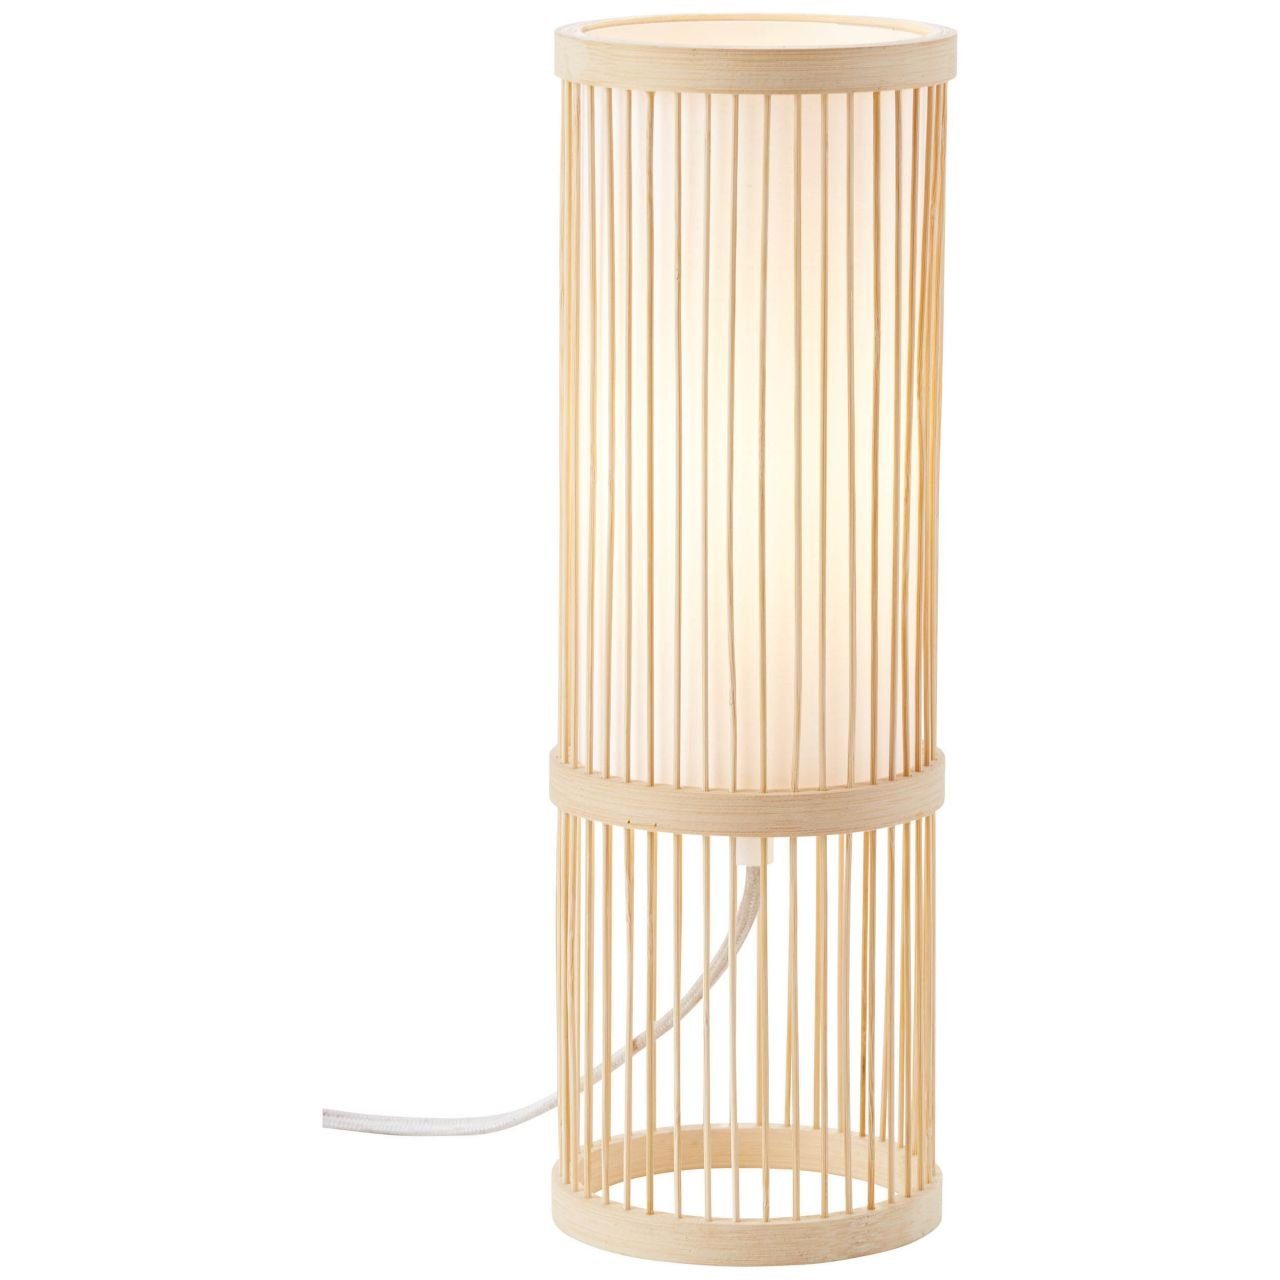 Brilliant Normallamp Nori, 40W, E27, Nori Lampe g.f. Tischleuchte 1x A60, Tischleuchte natur/weiß